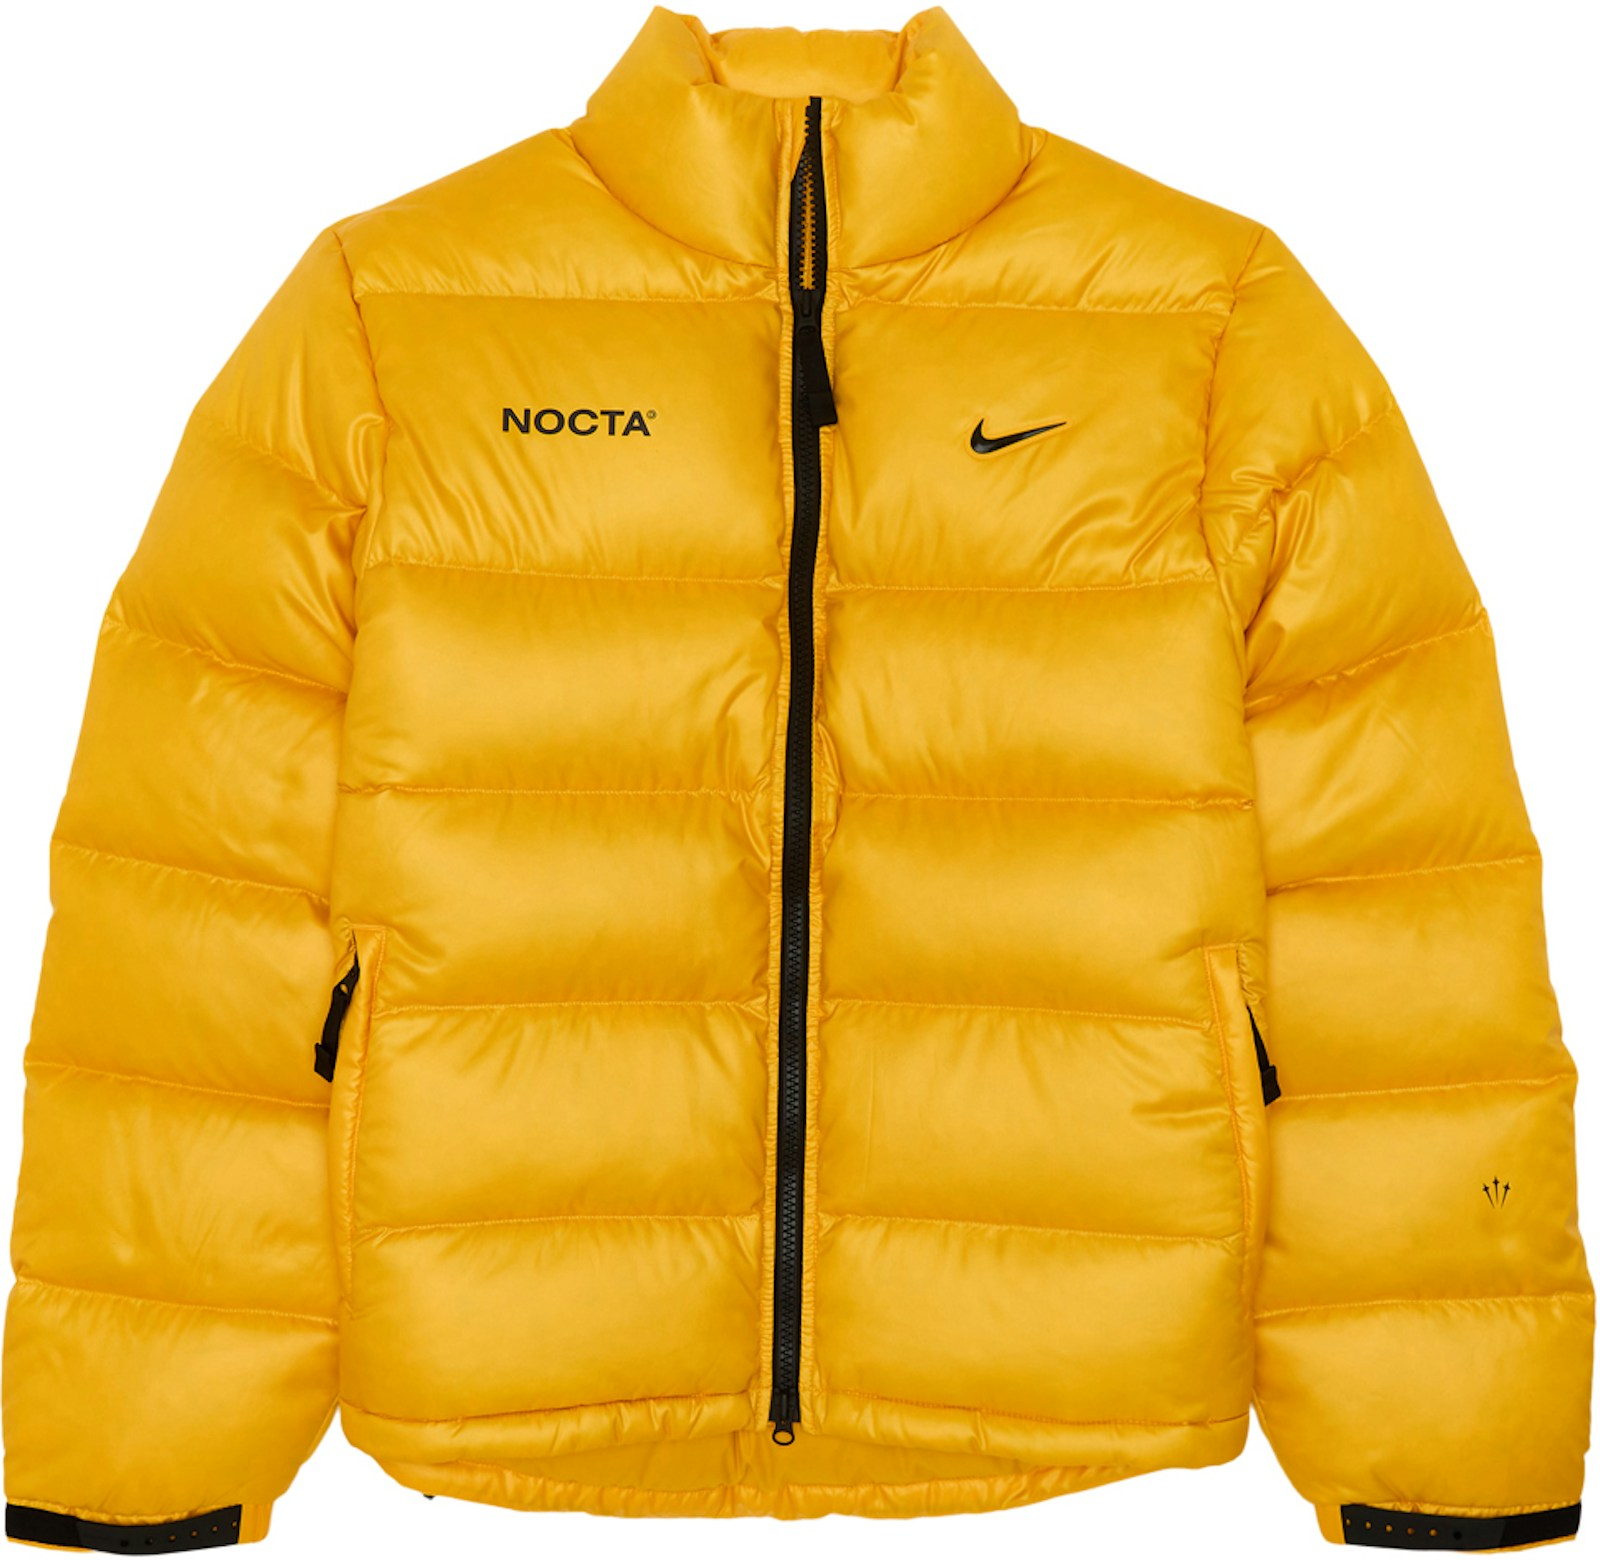 Nike x Drake NOCTA Puffer Jacket Yellow - FW20